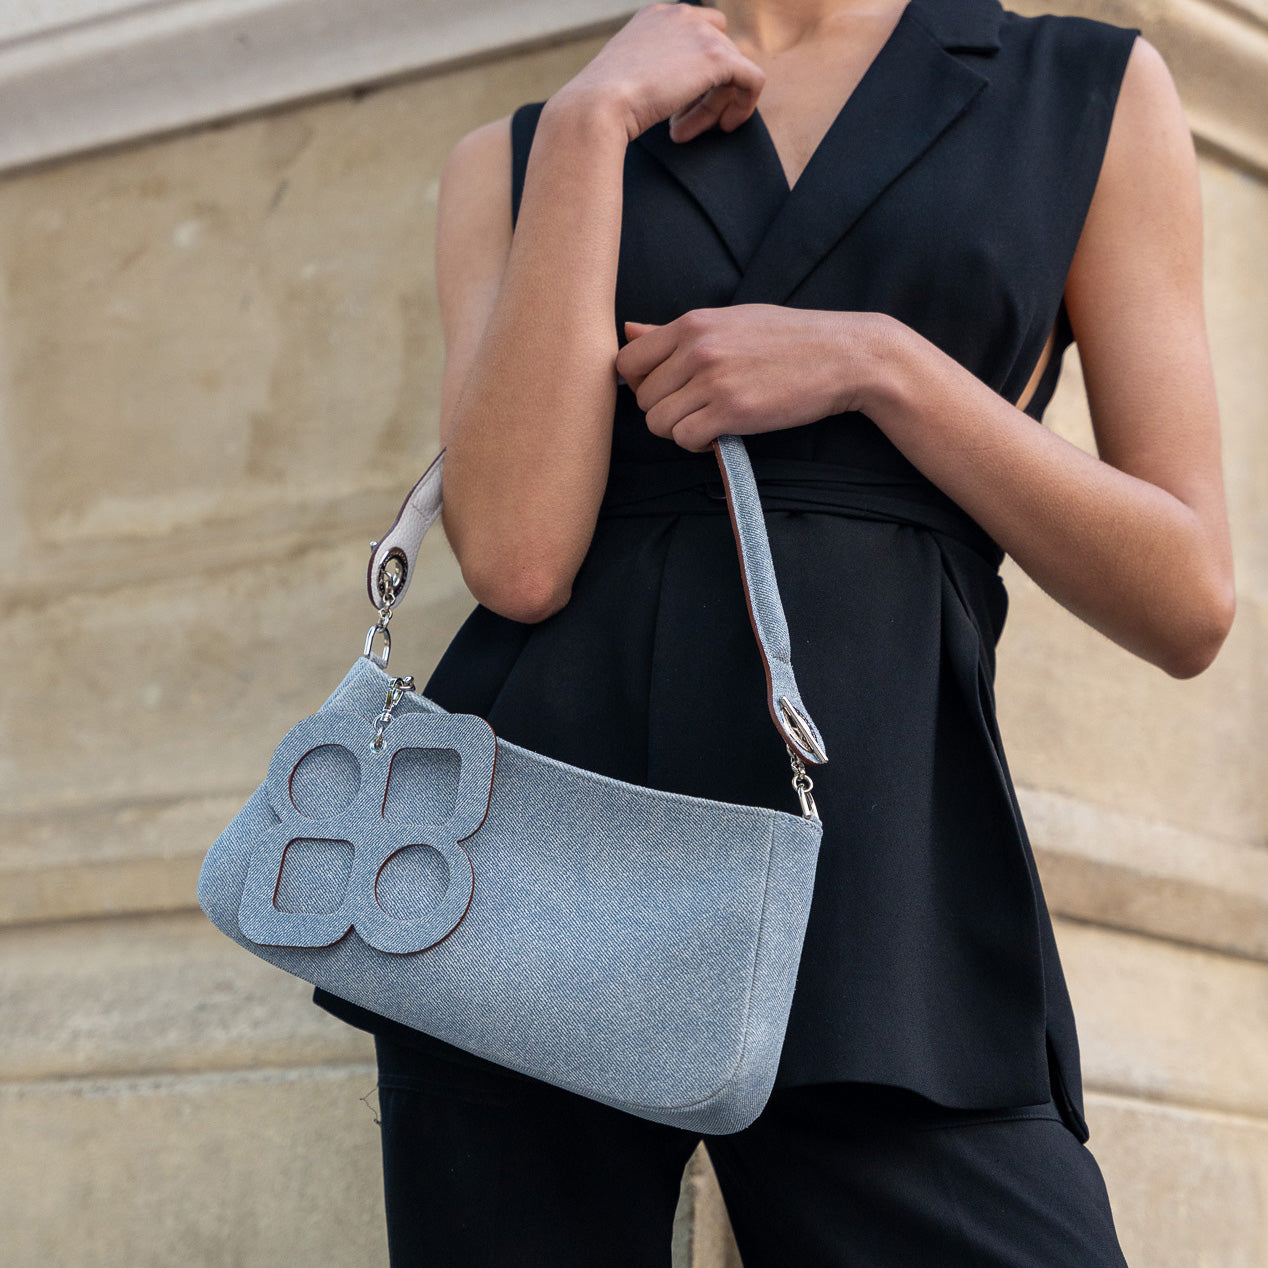 MOON Baguette Shoulder Bag - Clover Bag Jewel